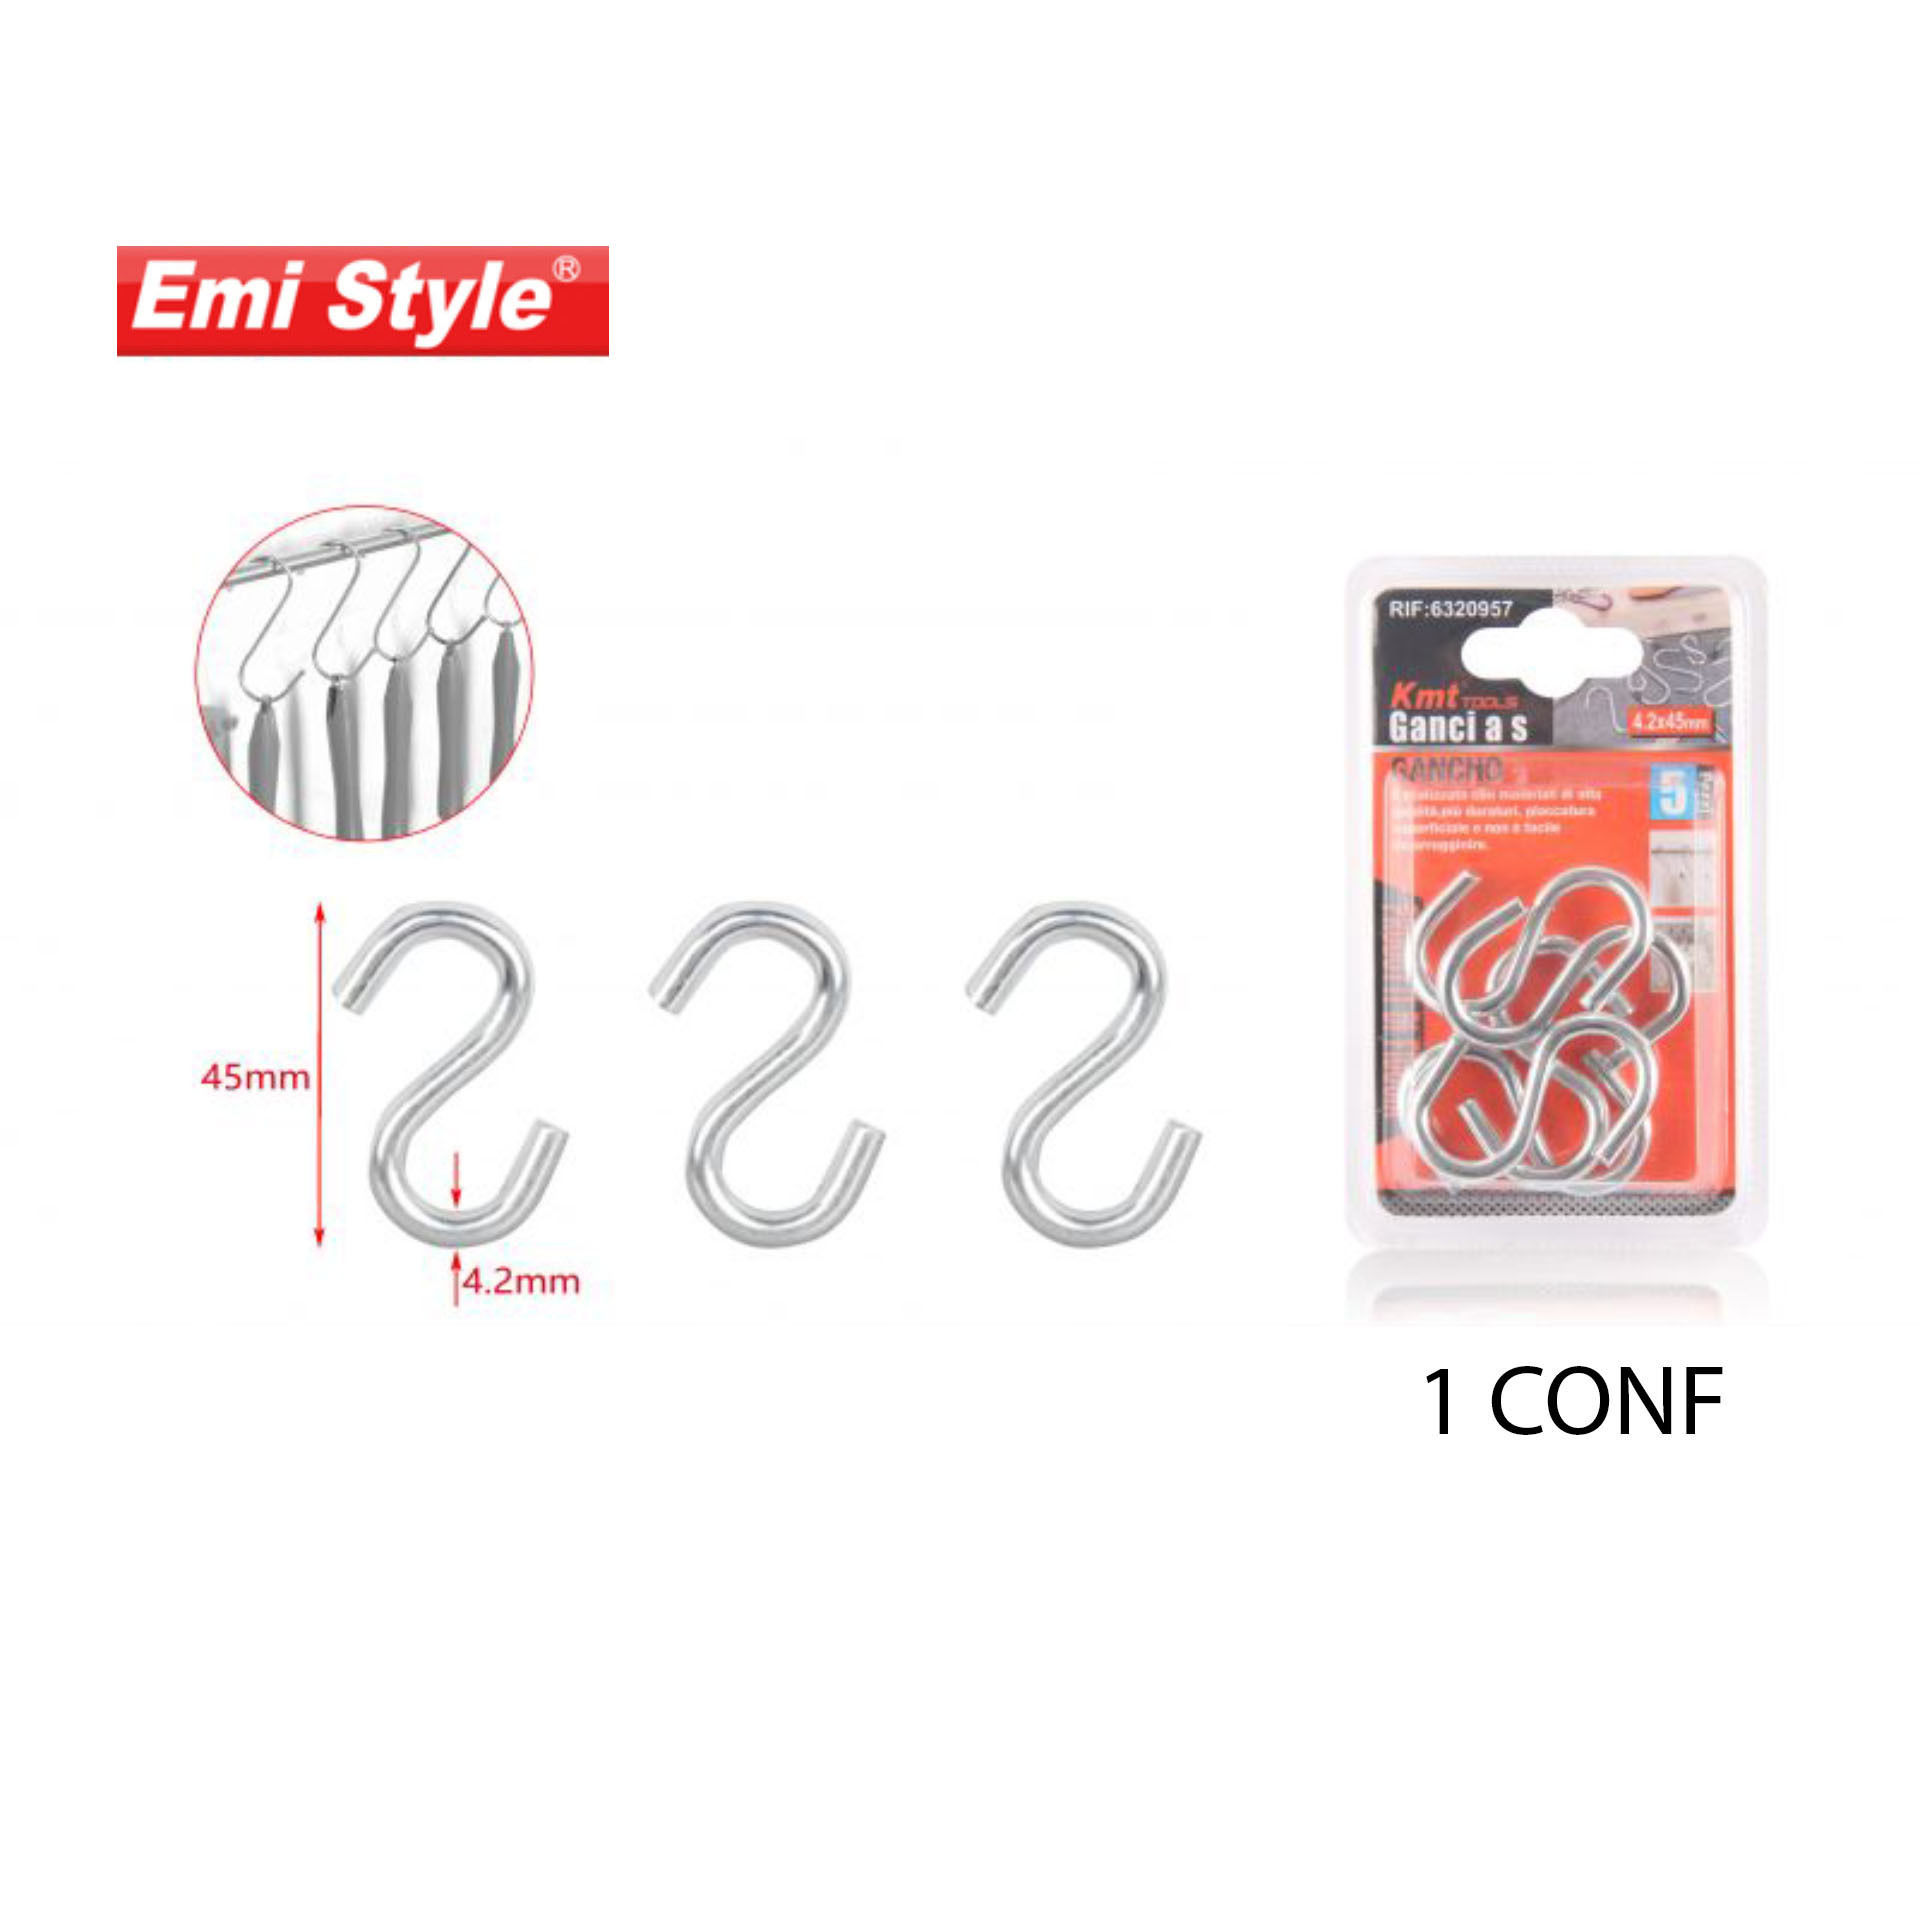 EMI STYLE GANCI A S 5PCS 4.2*45MMEmi Style